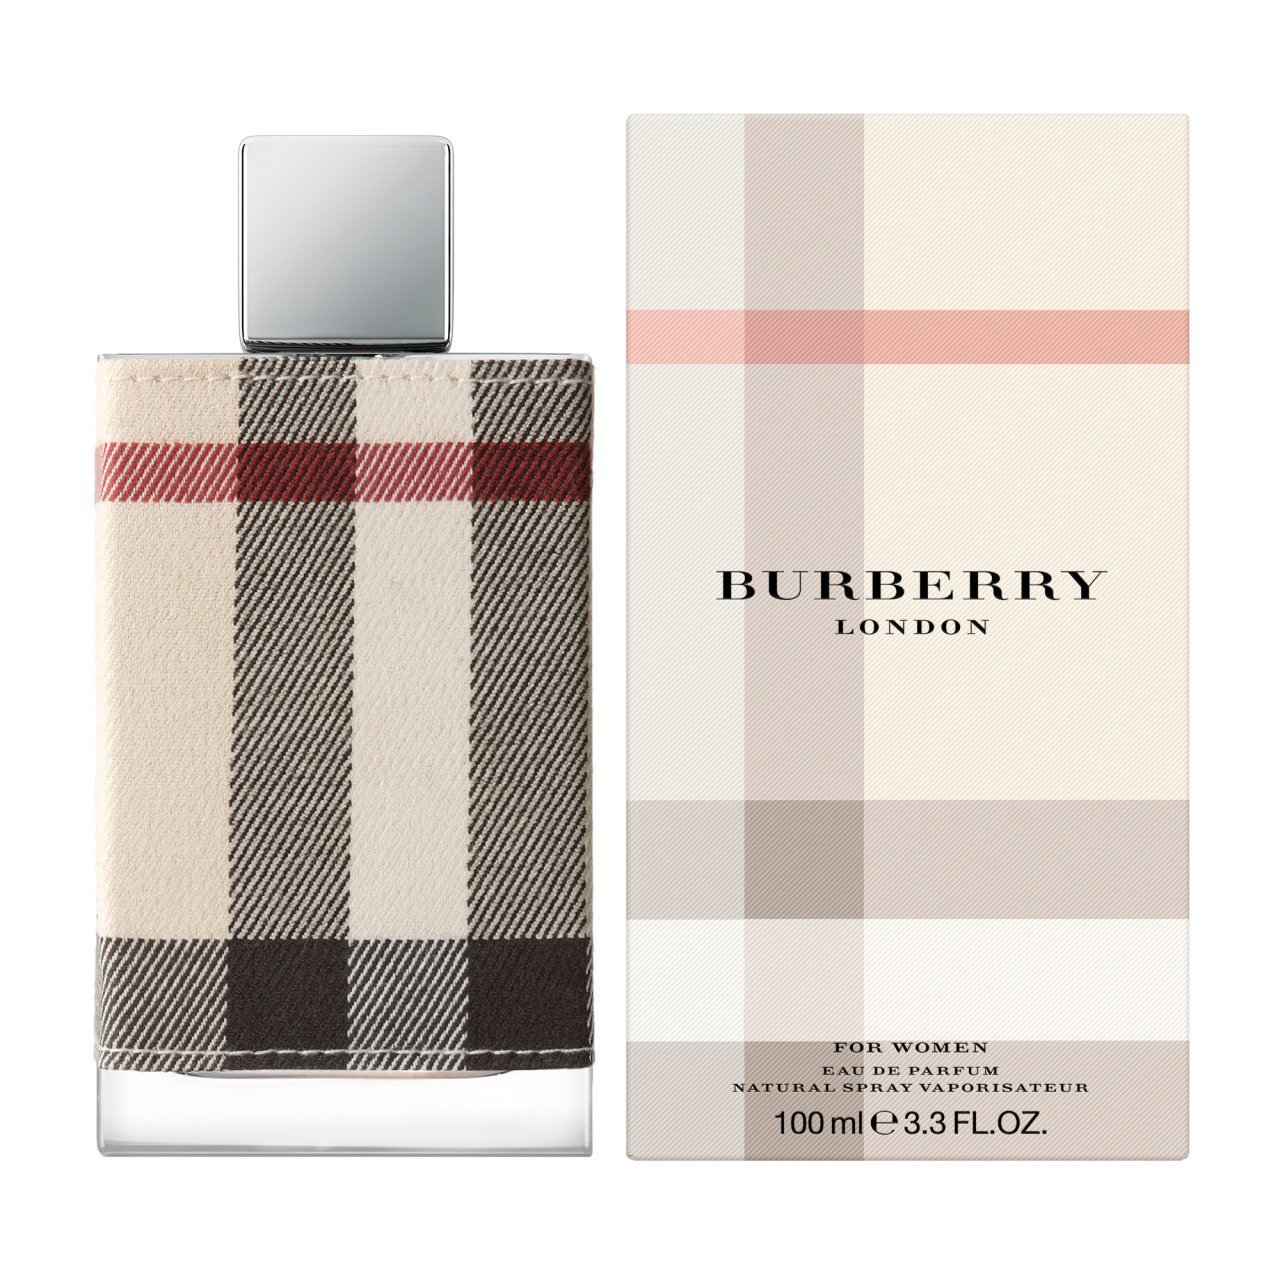 Burberry London by Burberry Women 3.3 oz Eau de Parfum Spray | FragranceBaba.com